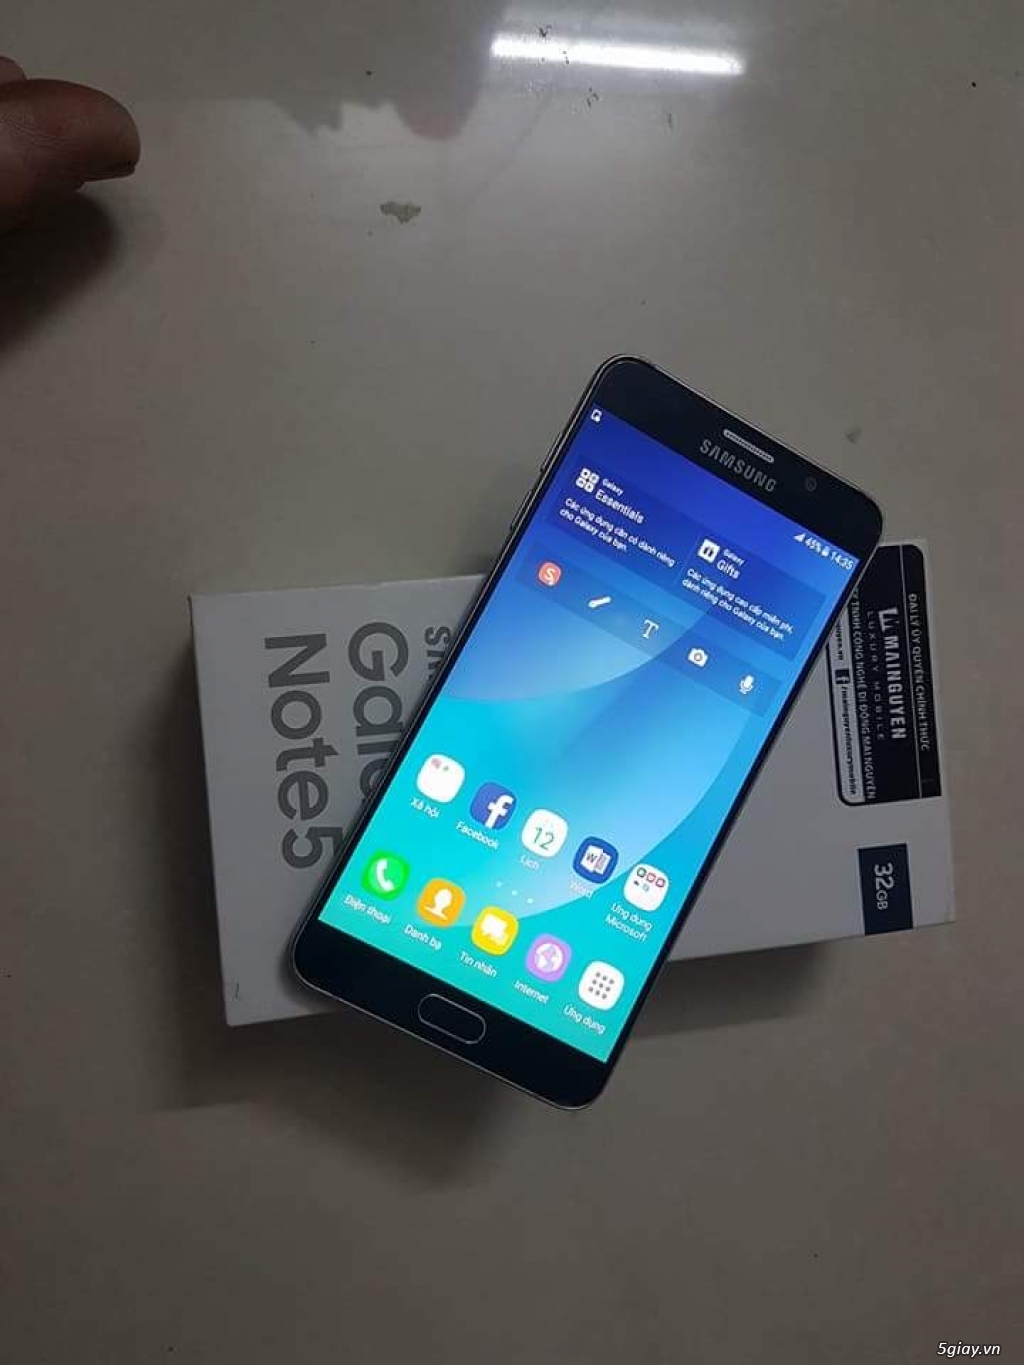 Note 5 xanh đen, chính hãng Samsung Việt Nam, full box